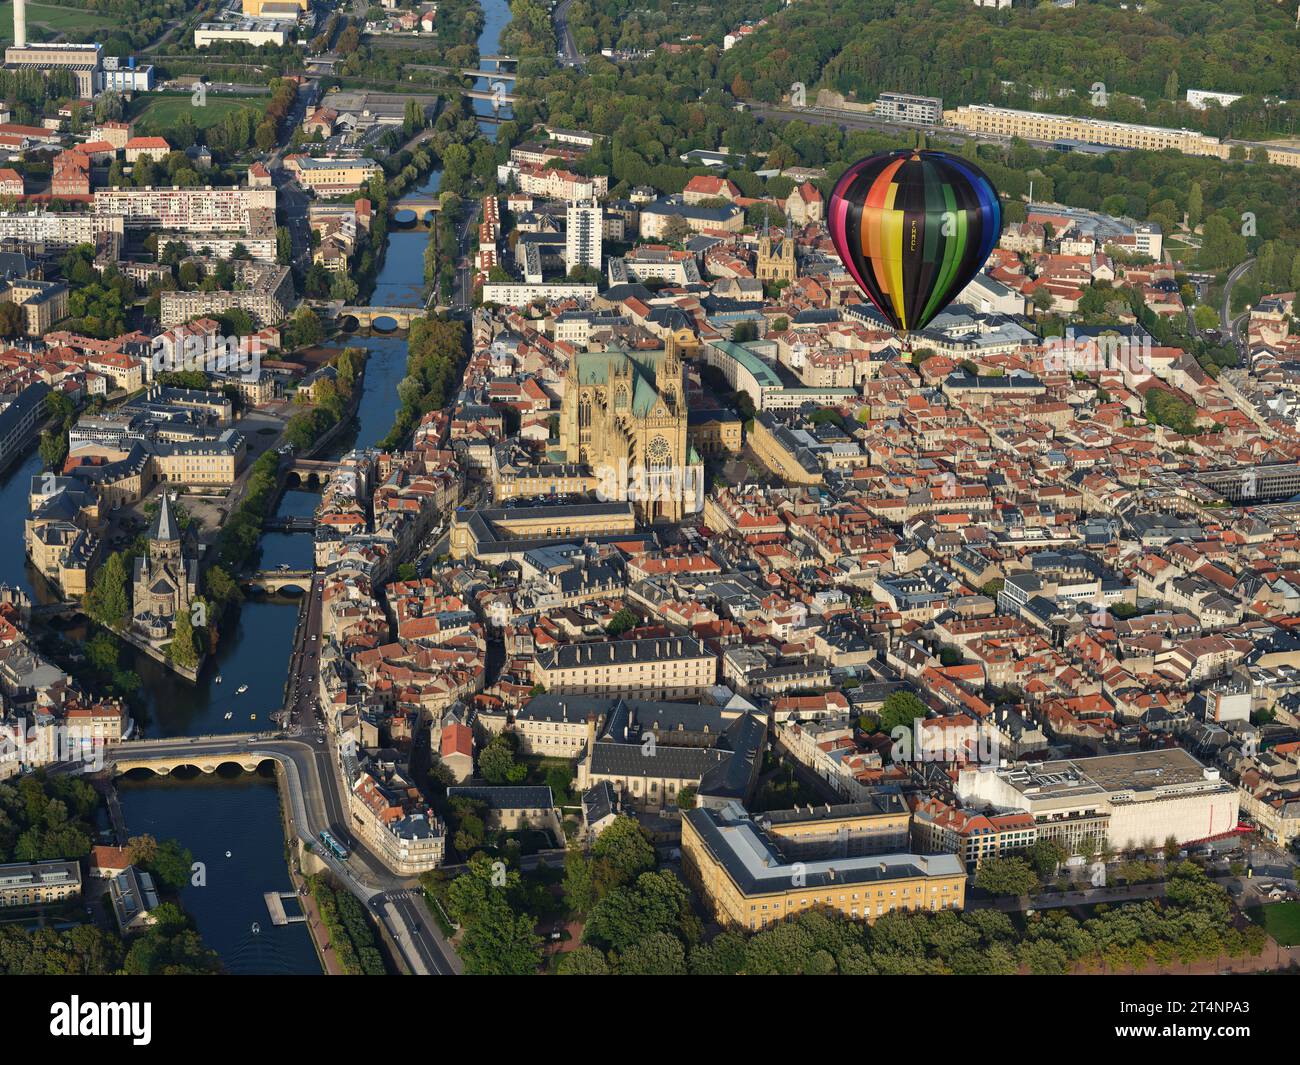 LUFT-LUFT-ANSICHT. Heißluftballon über der Stadt Metz. Moselle, Grand Est, Frankreich. Stockfoto